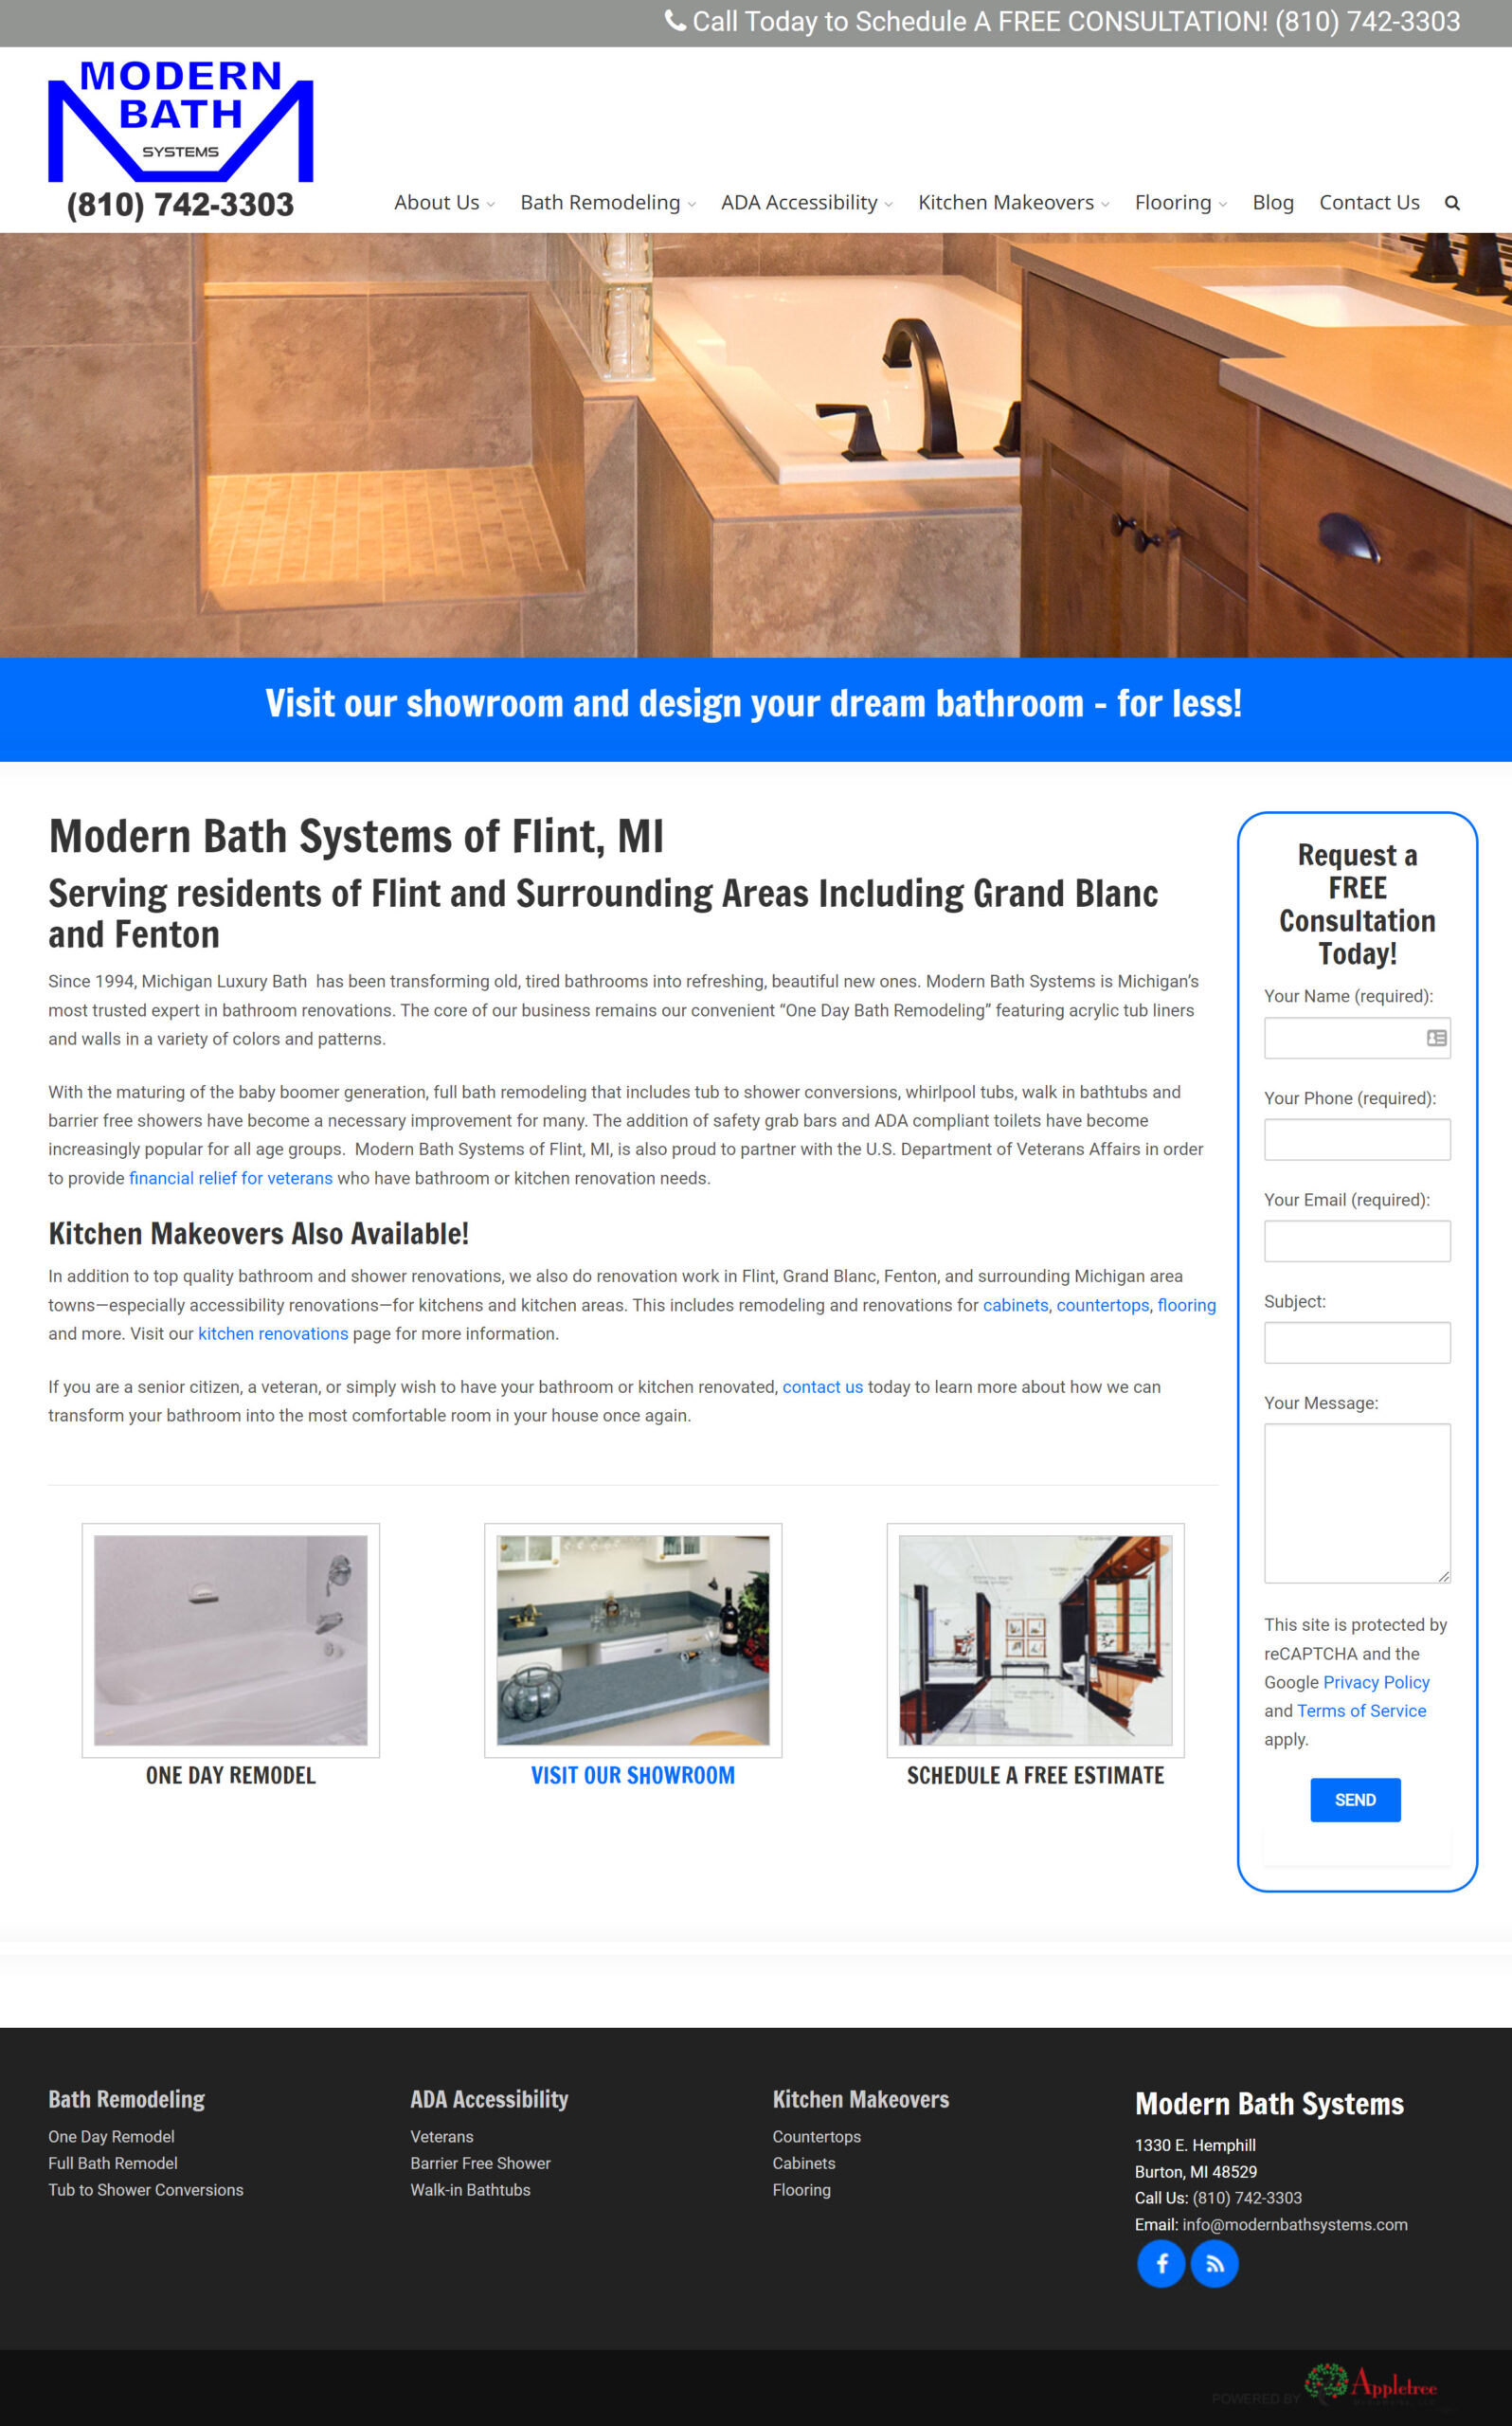 Modern Bath Systems - Bathroom Remodel Website